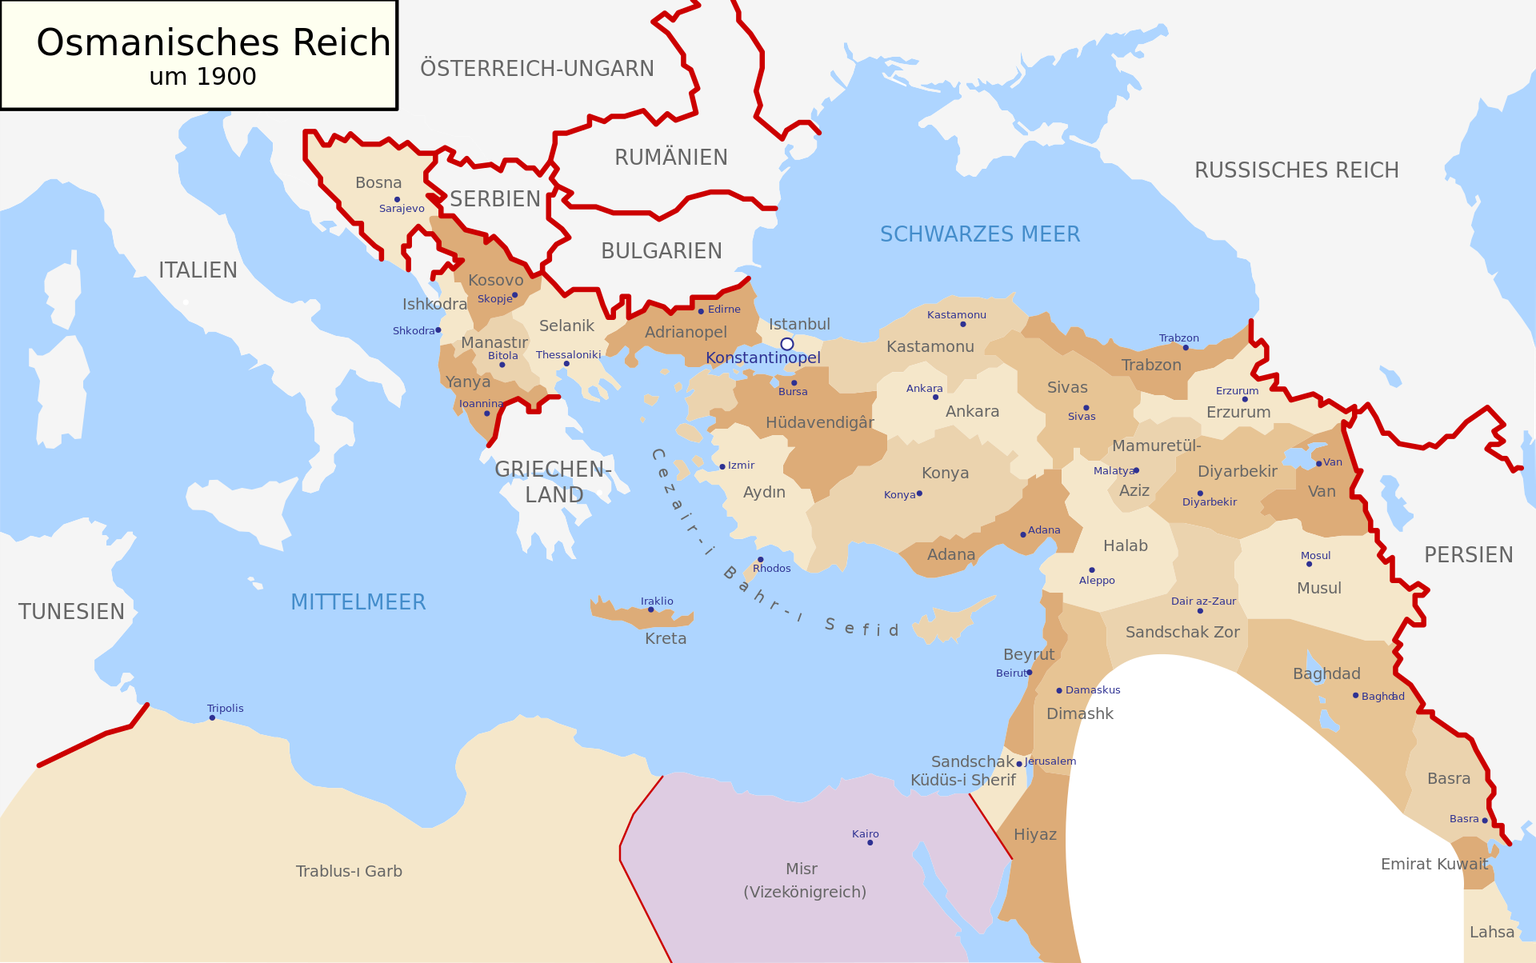 Das Osmanische Reich um 1900
https://de.wikipedia.org/wiki/Osmanisches_Reich#/media/Datei:Map-of-Ottoman-Empire-in-1900-German.svg